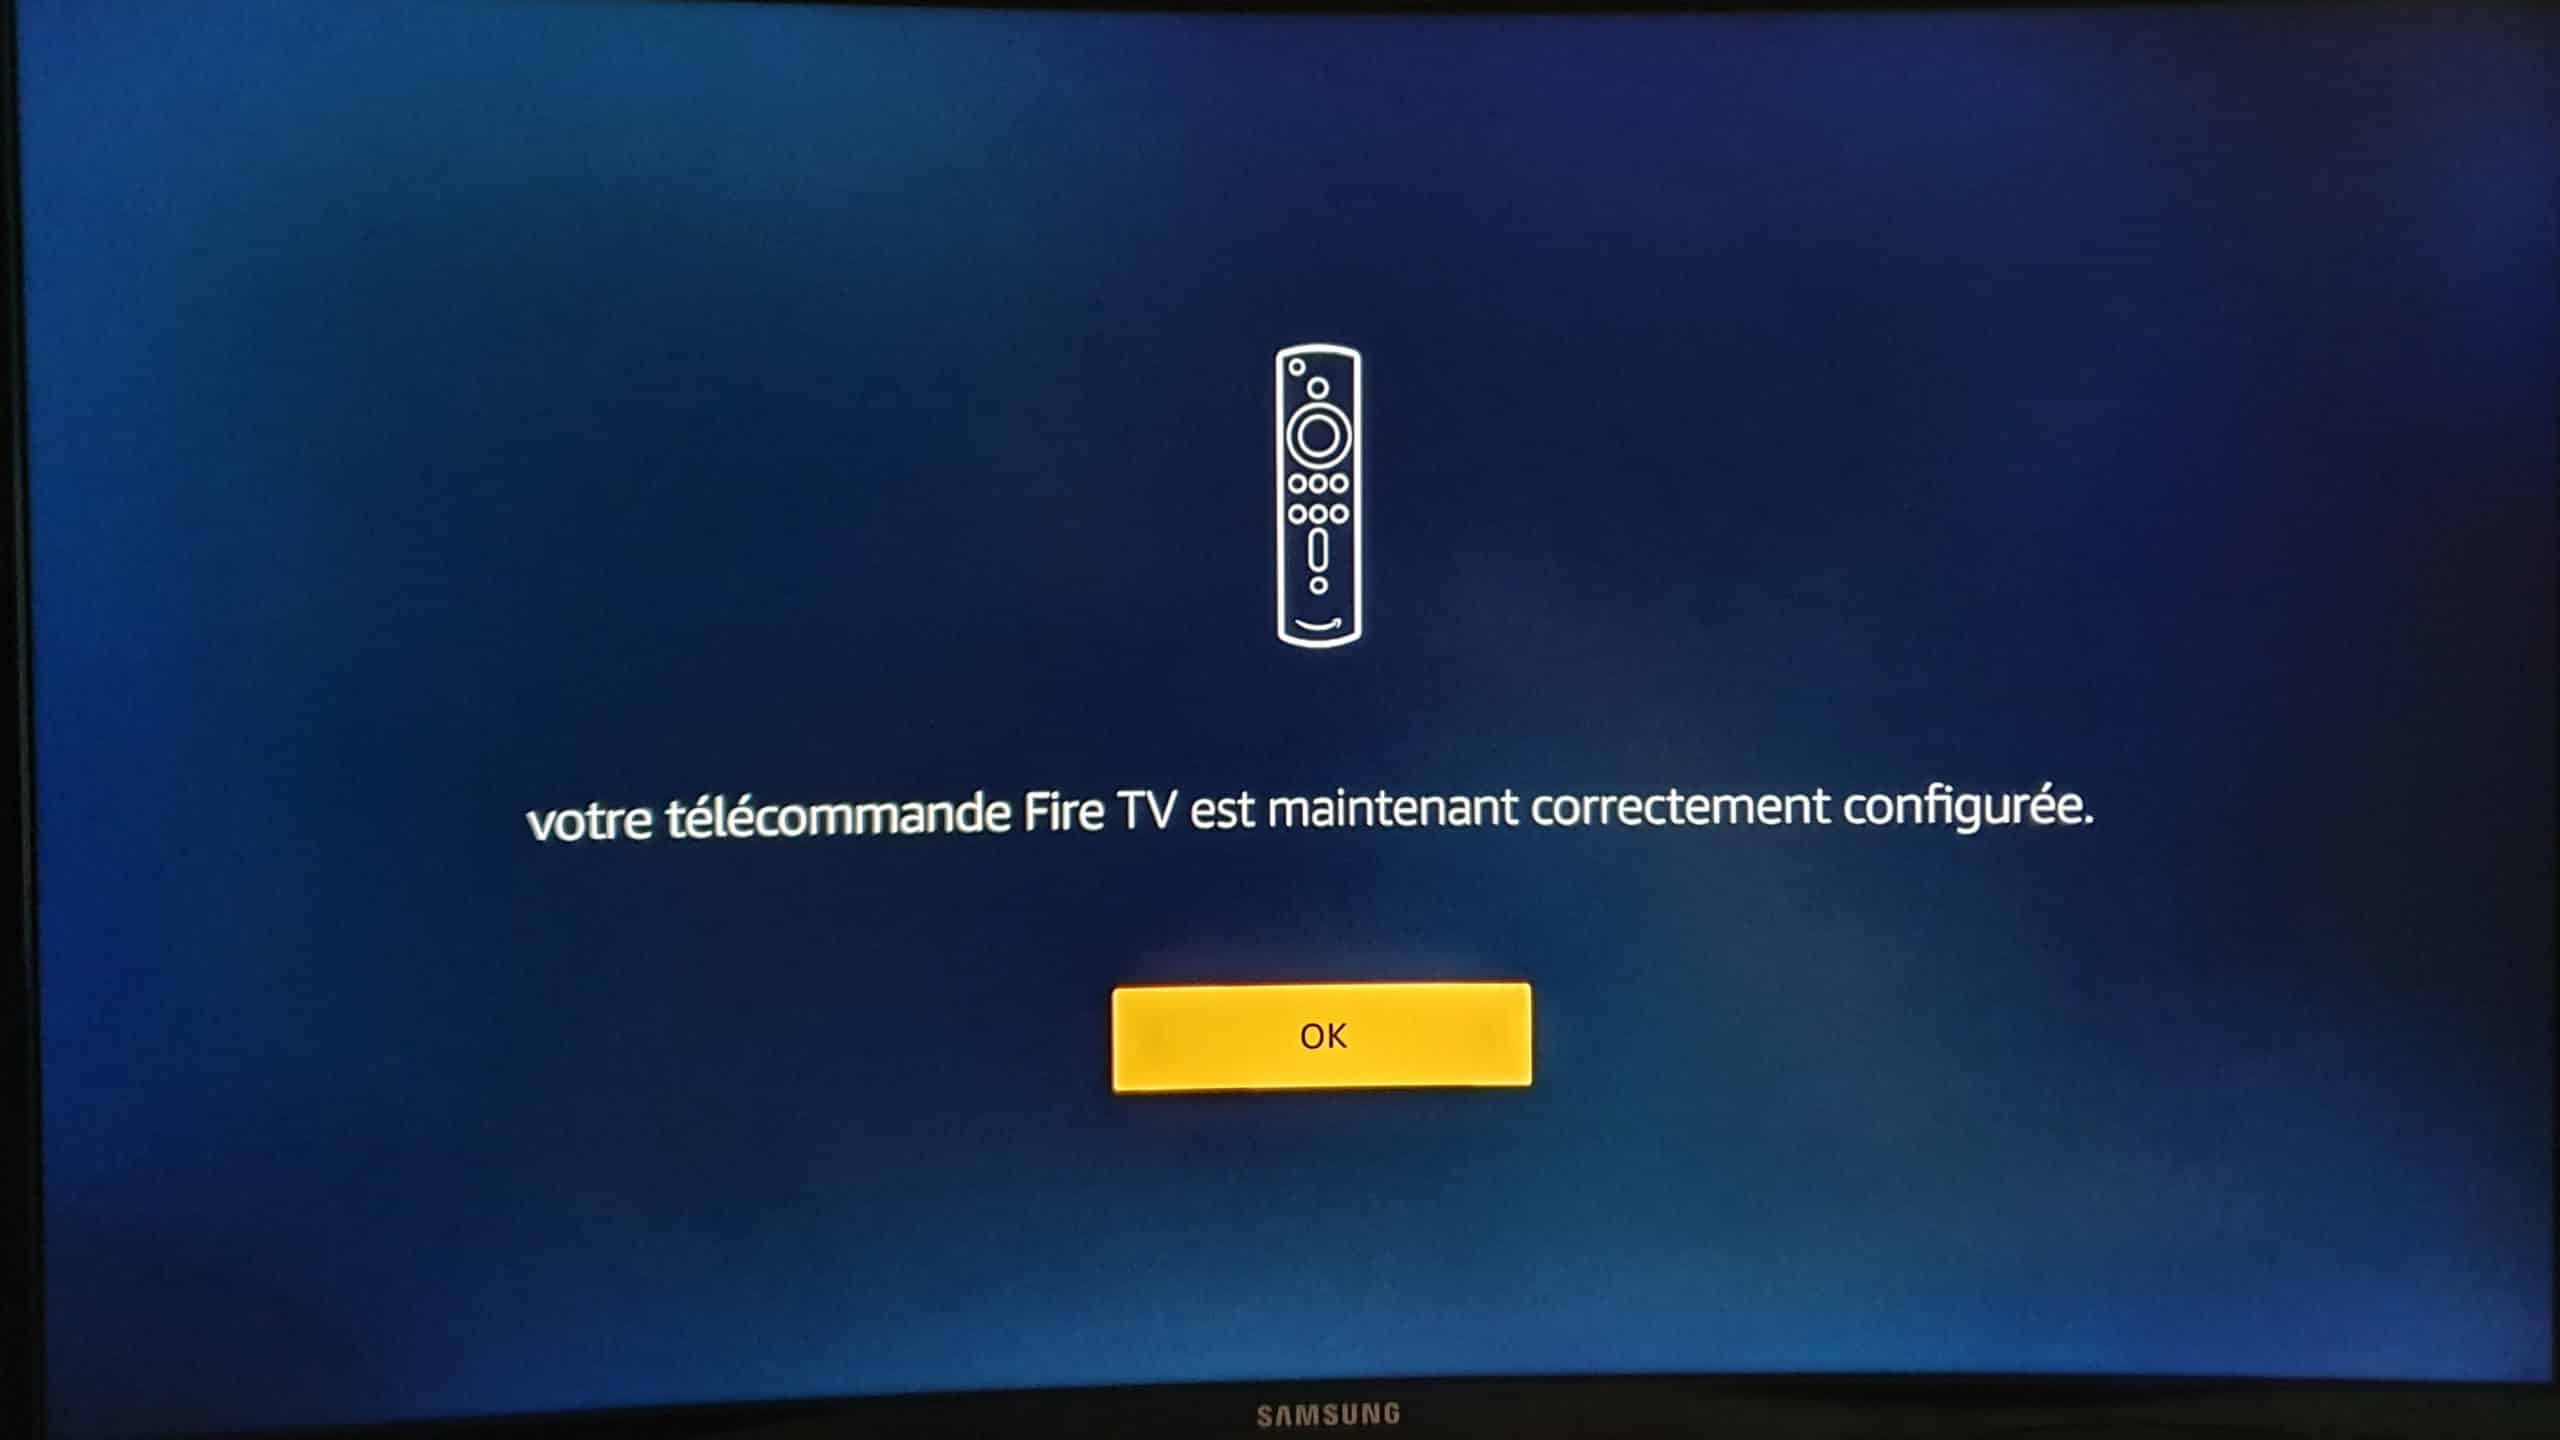 TUTO - Comment contrôler sa PS4 grâce à une télécommande TV 